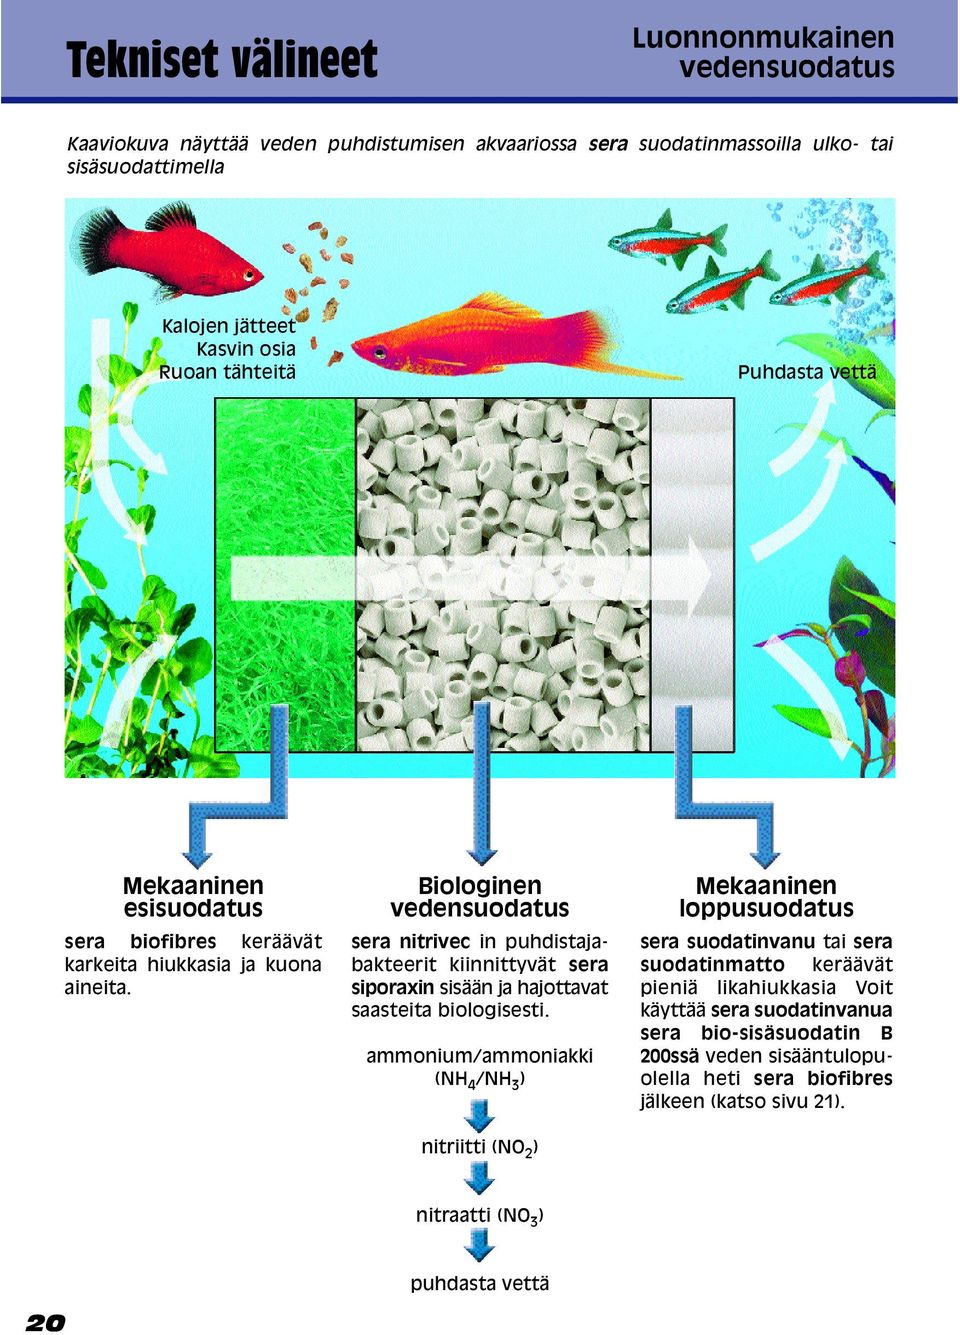 Biologinen vedensuodatus sera nitrivec in puhdistajabakteerit kiinnittyvät sera siporaxin sisään ja hajottavat saasteita biologisesti.